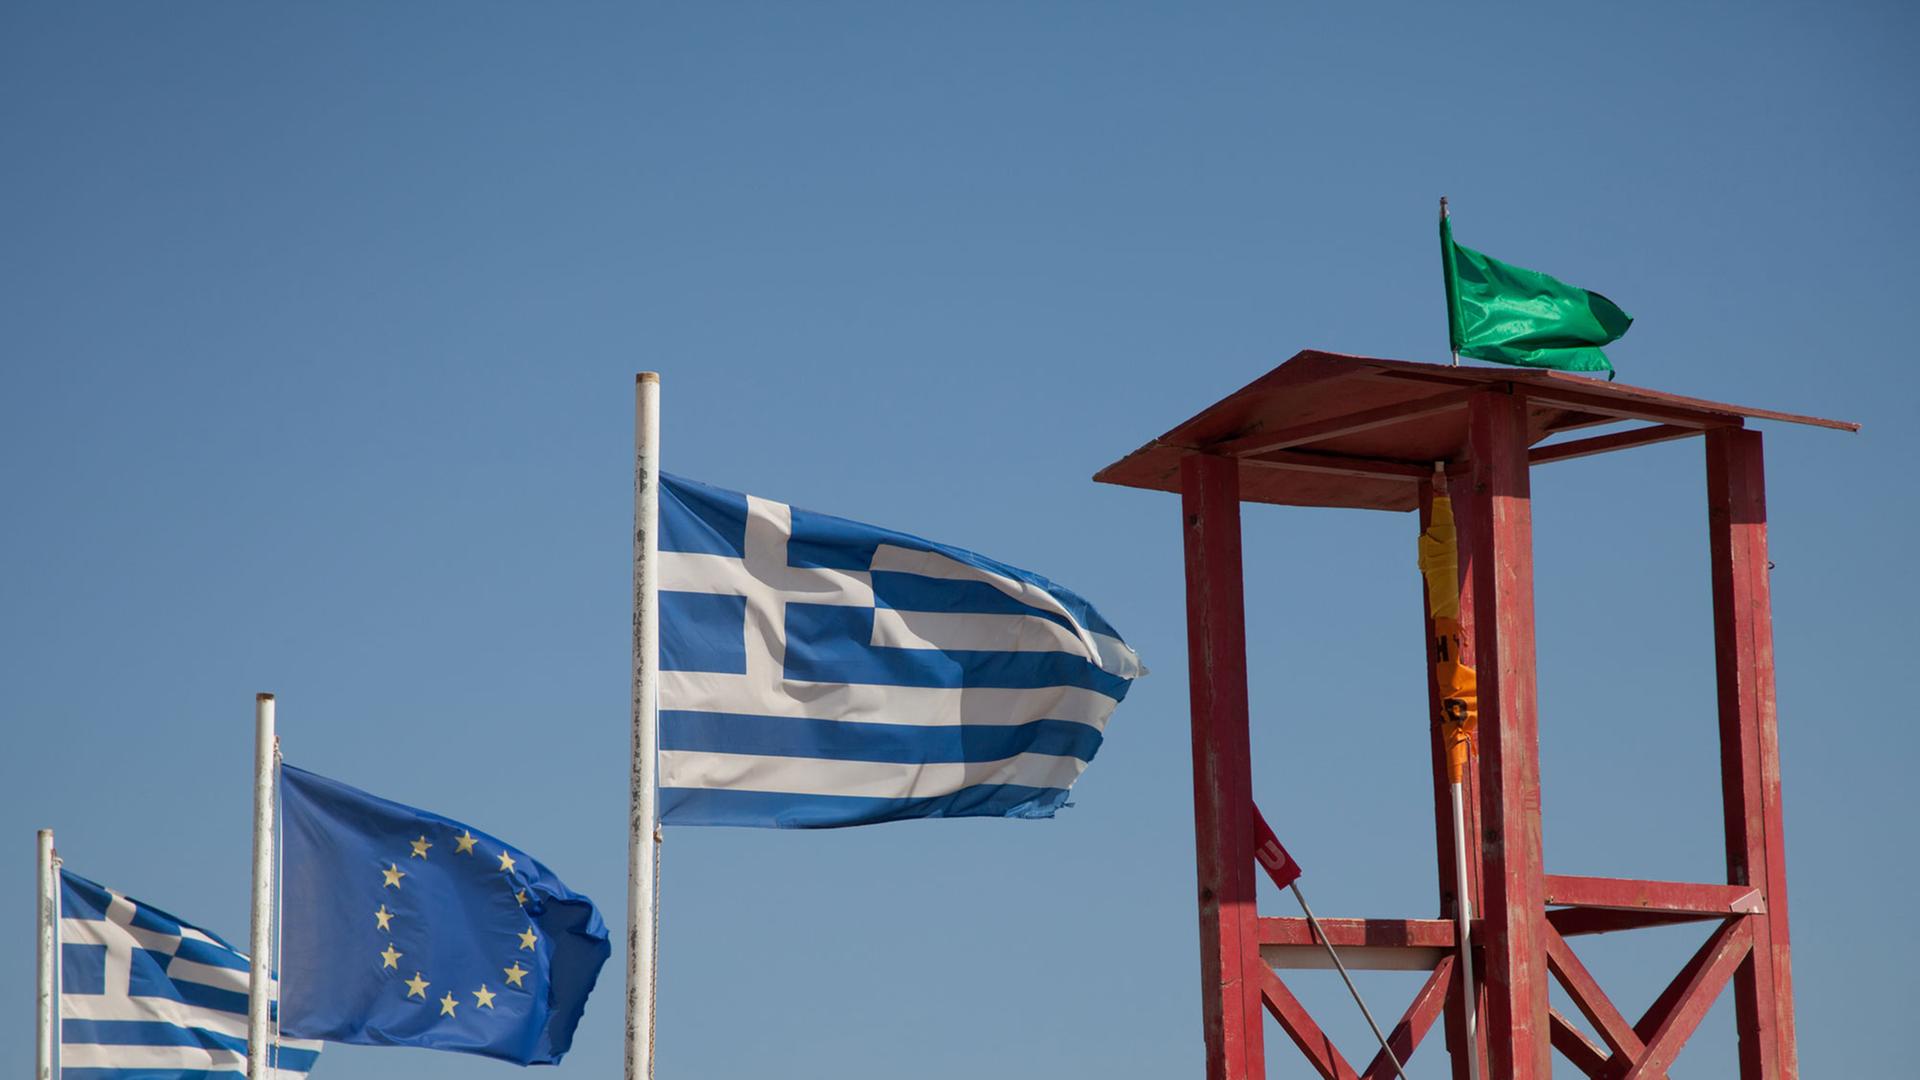 Griechische Fahnen und die EU-Flagge wehen im Wind am 01.09.2013 am Strand von Elafonissi auf der Insel Kreta in Griechenland